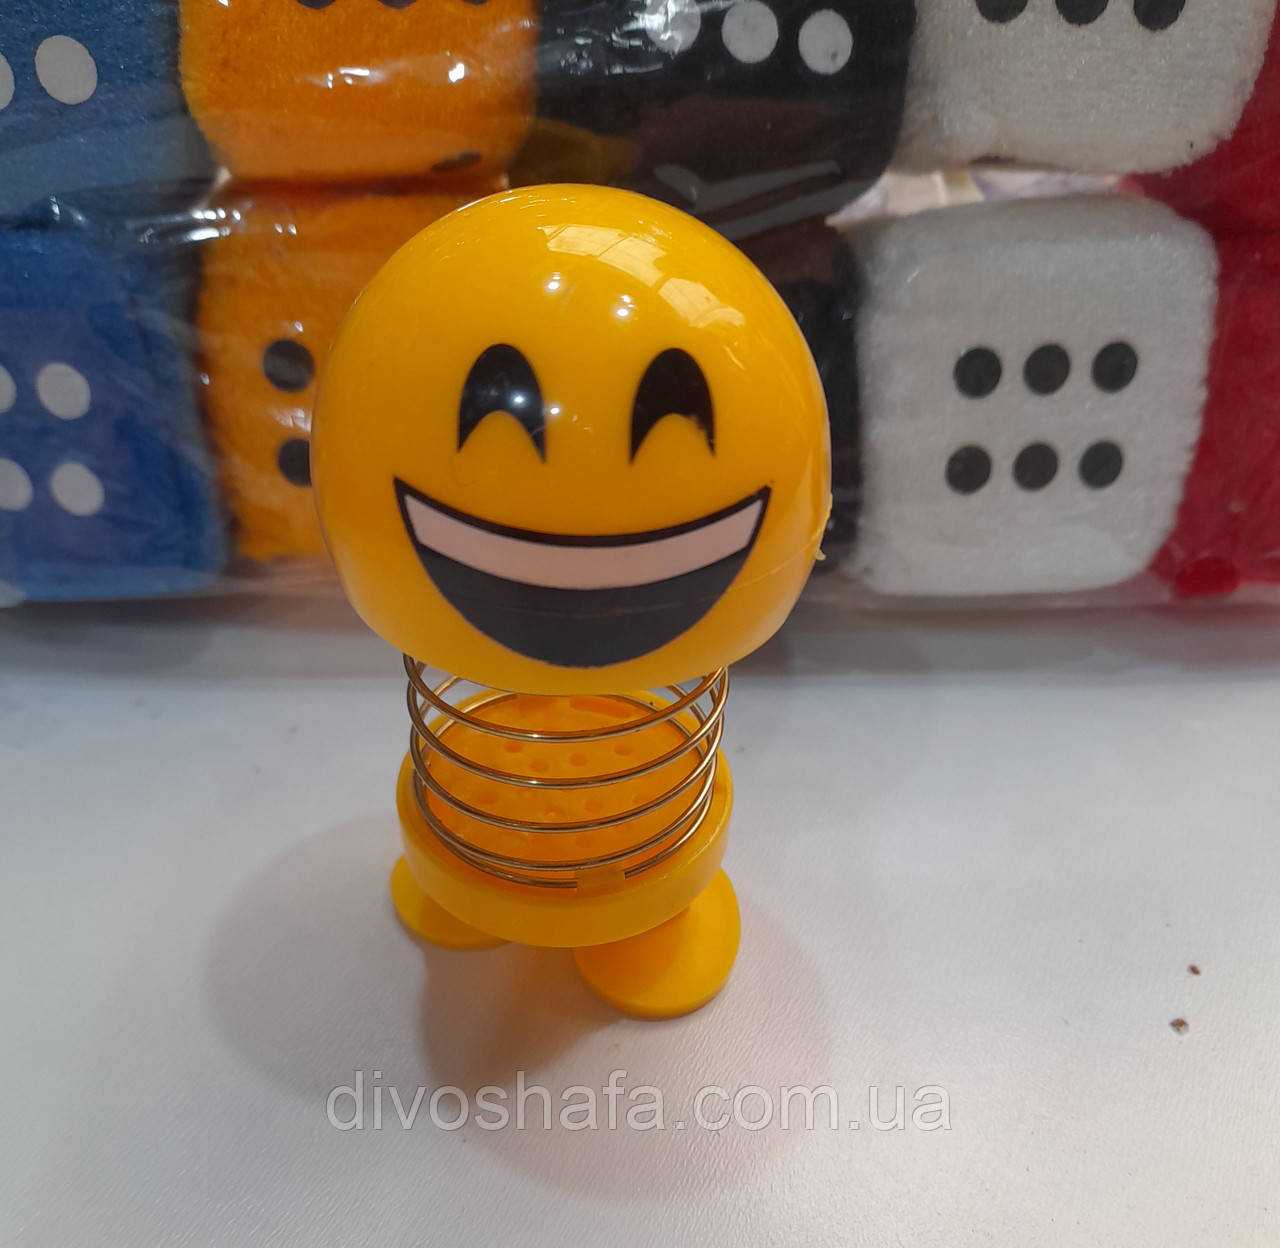 Іграшка маятник на пружинці в авто "Smile" (в асортименті) 8.5 см. Проі-во: Китай.